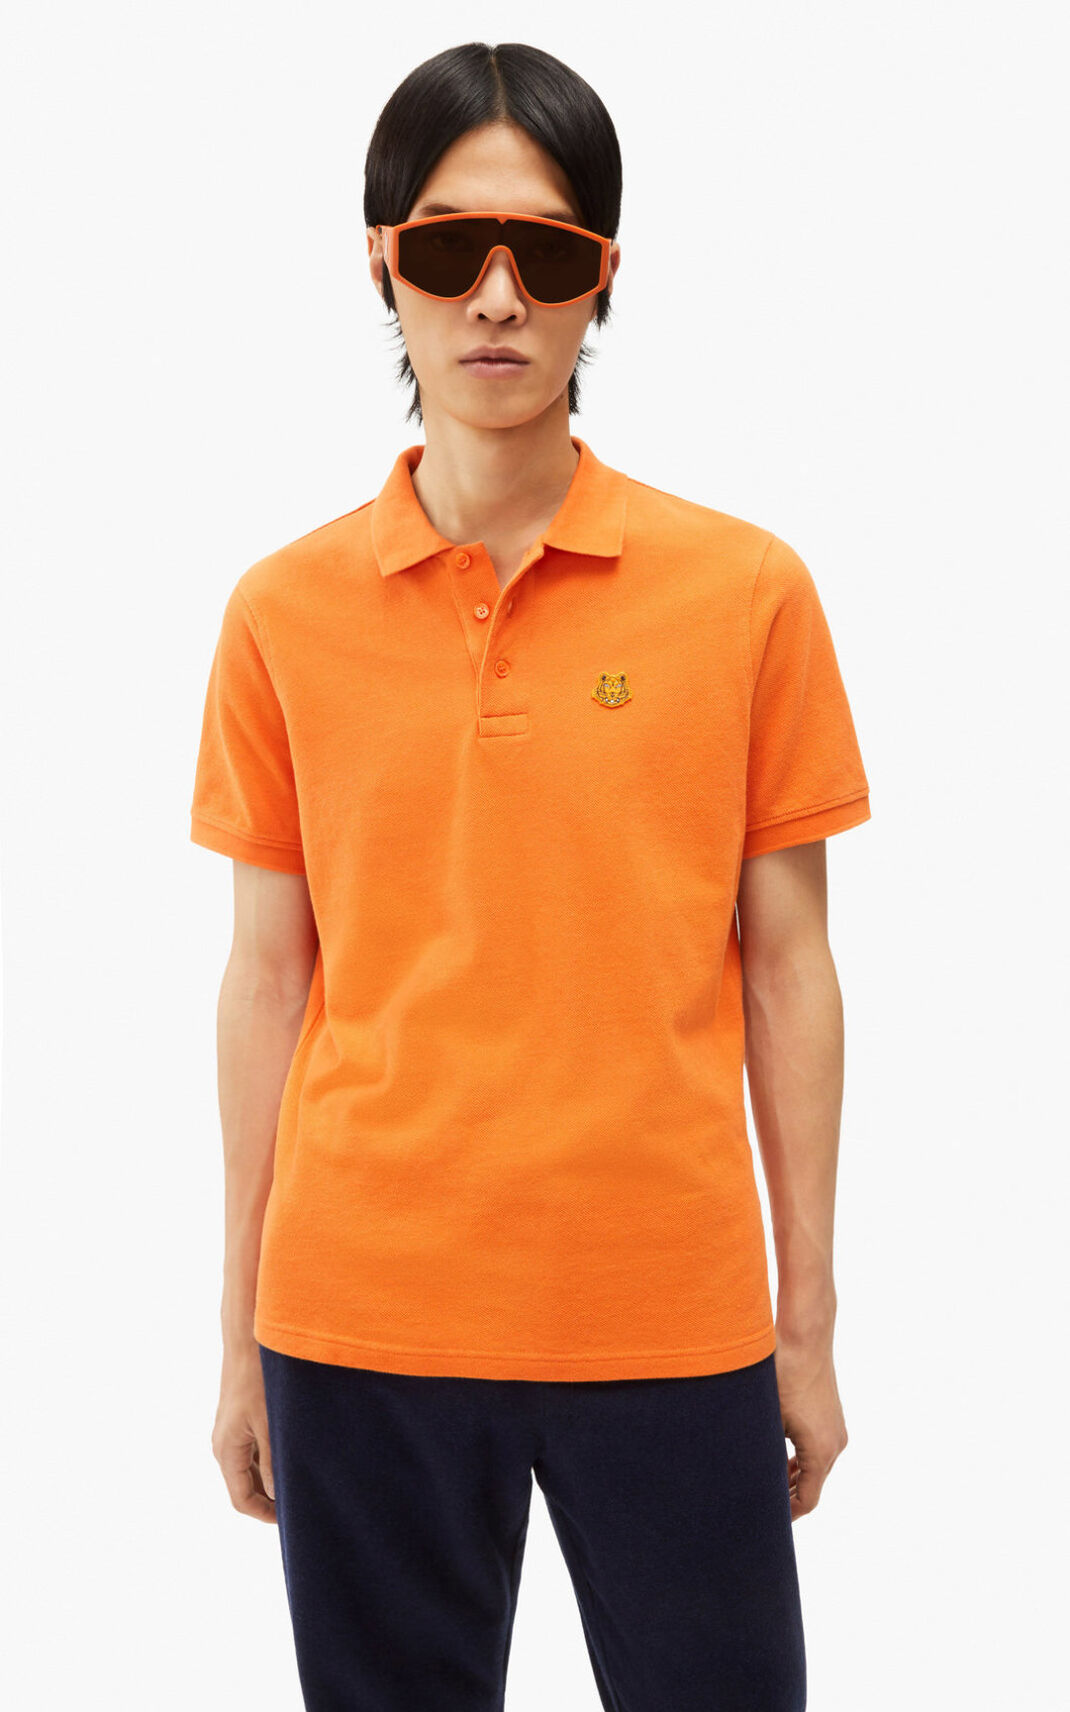 Kenzo 虎 Crest ポロシャツ メンズ オレンジ - UAOWJQ583